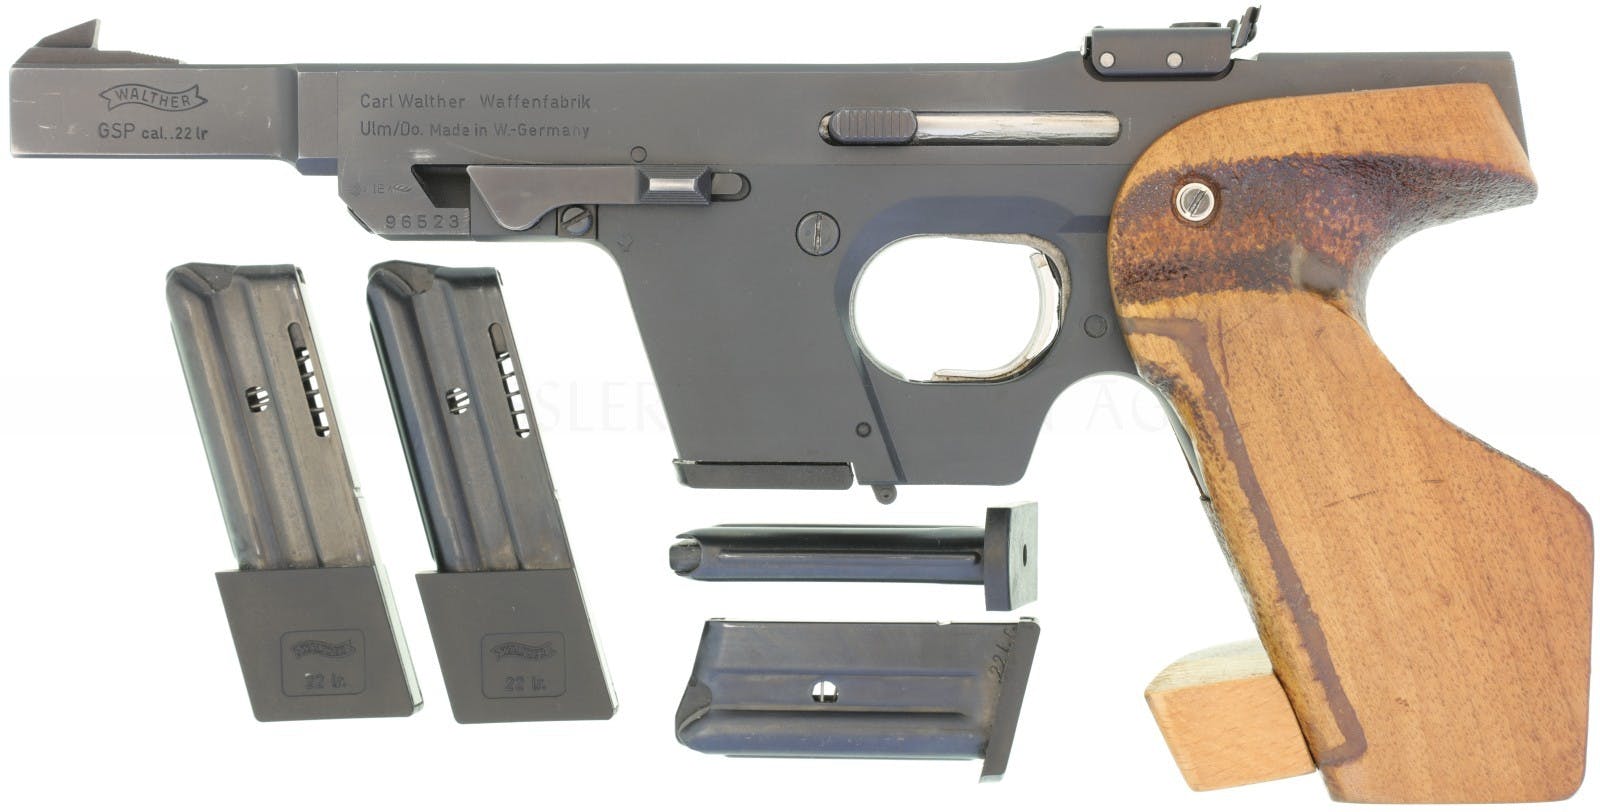 Deutsche Walther GSP